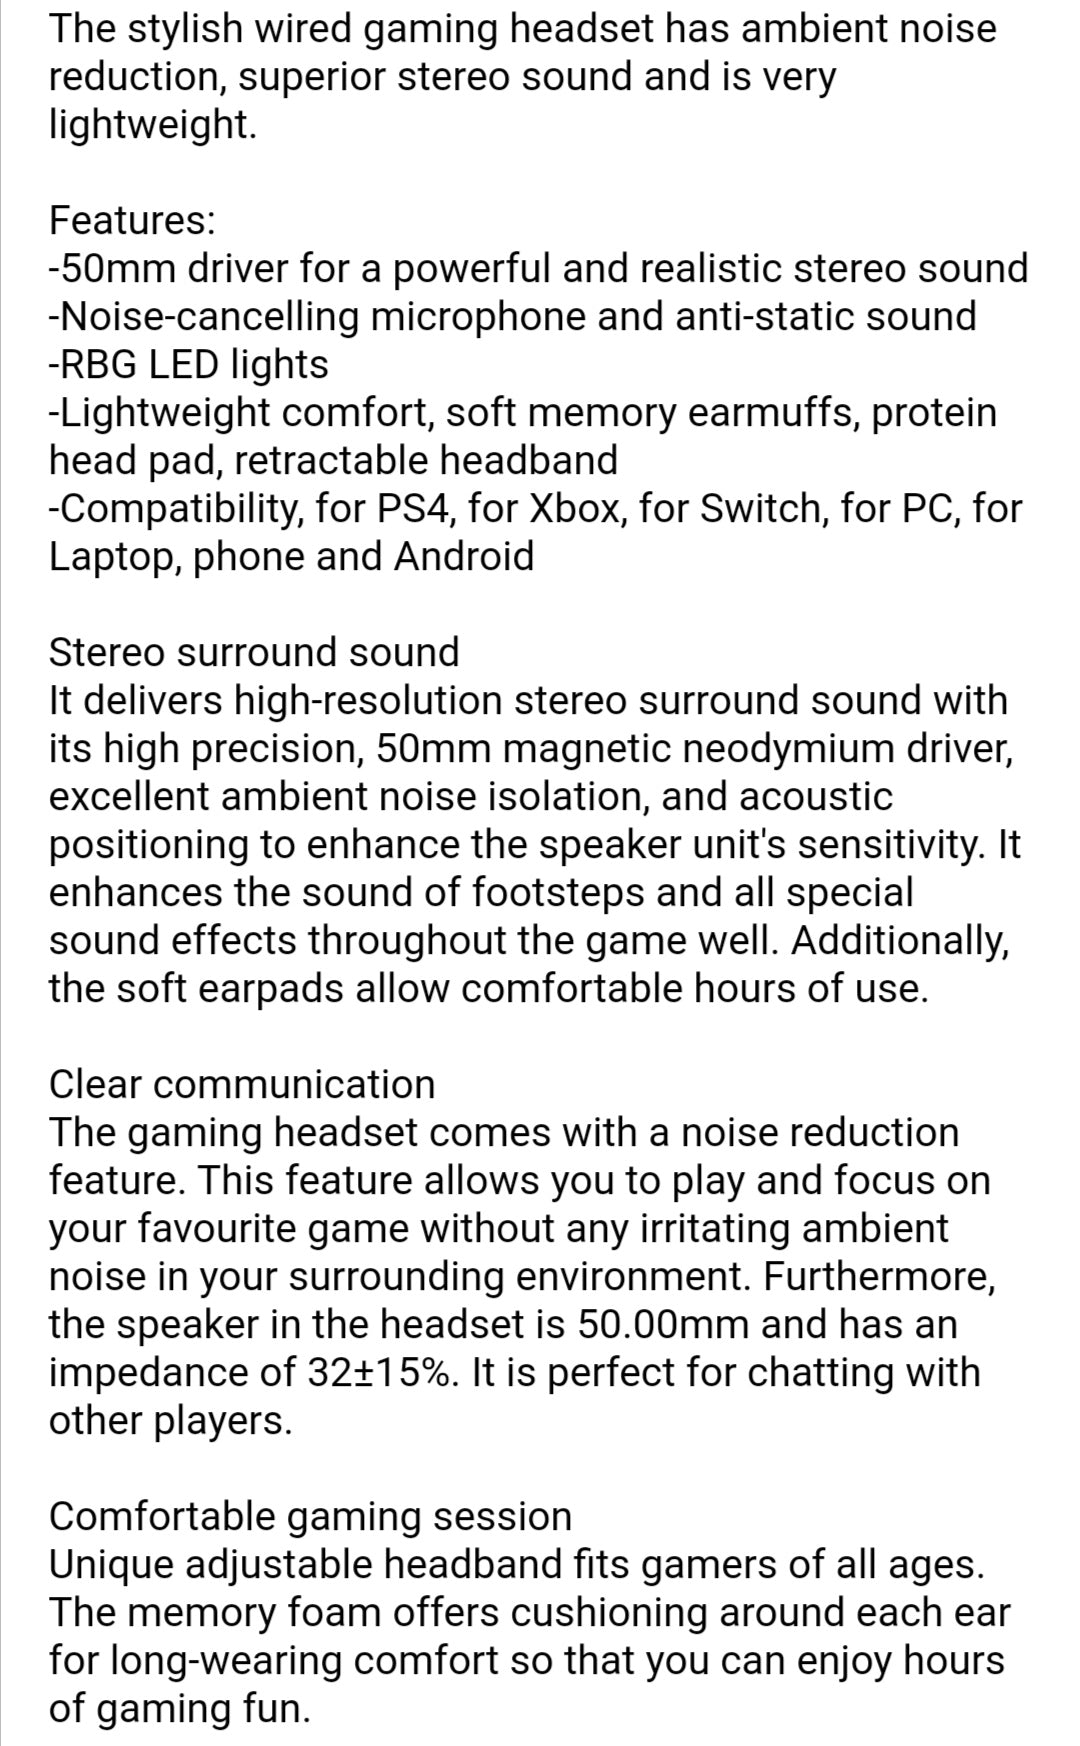 X11 Gaming Headset